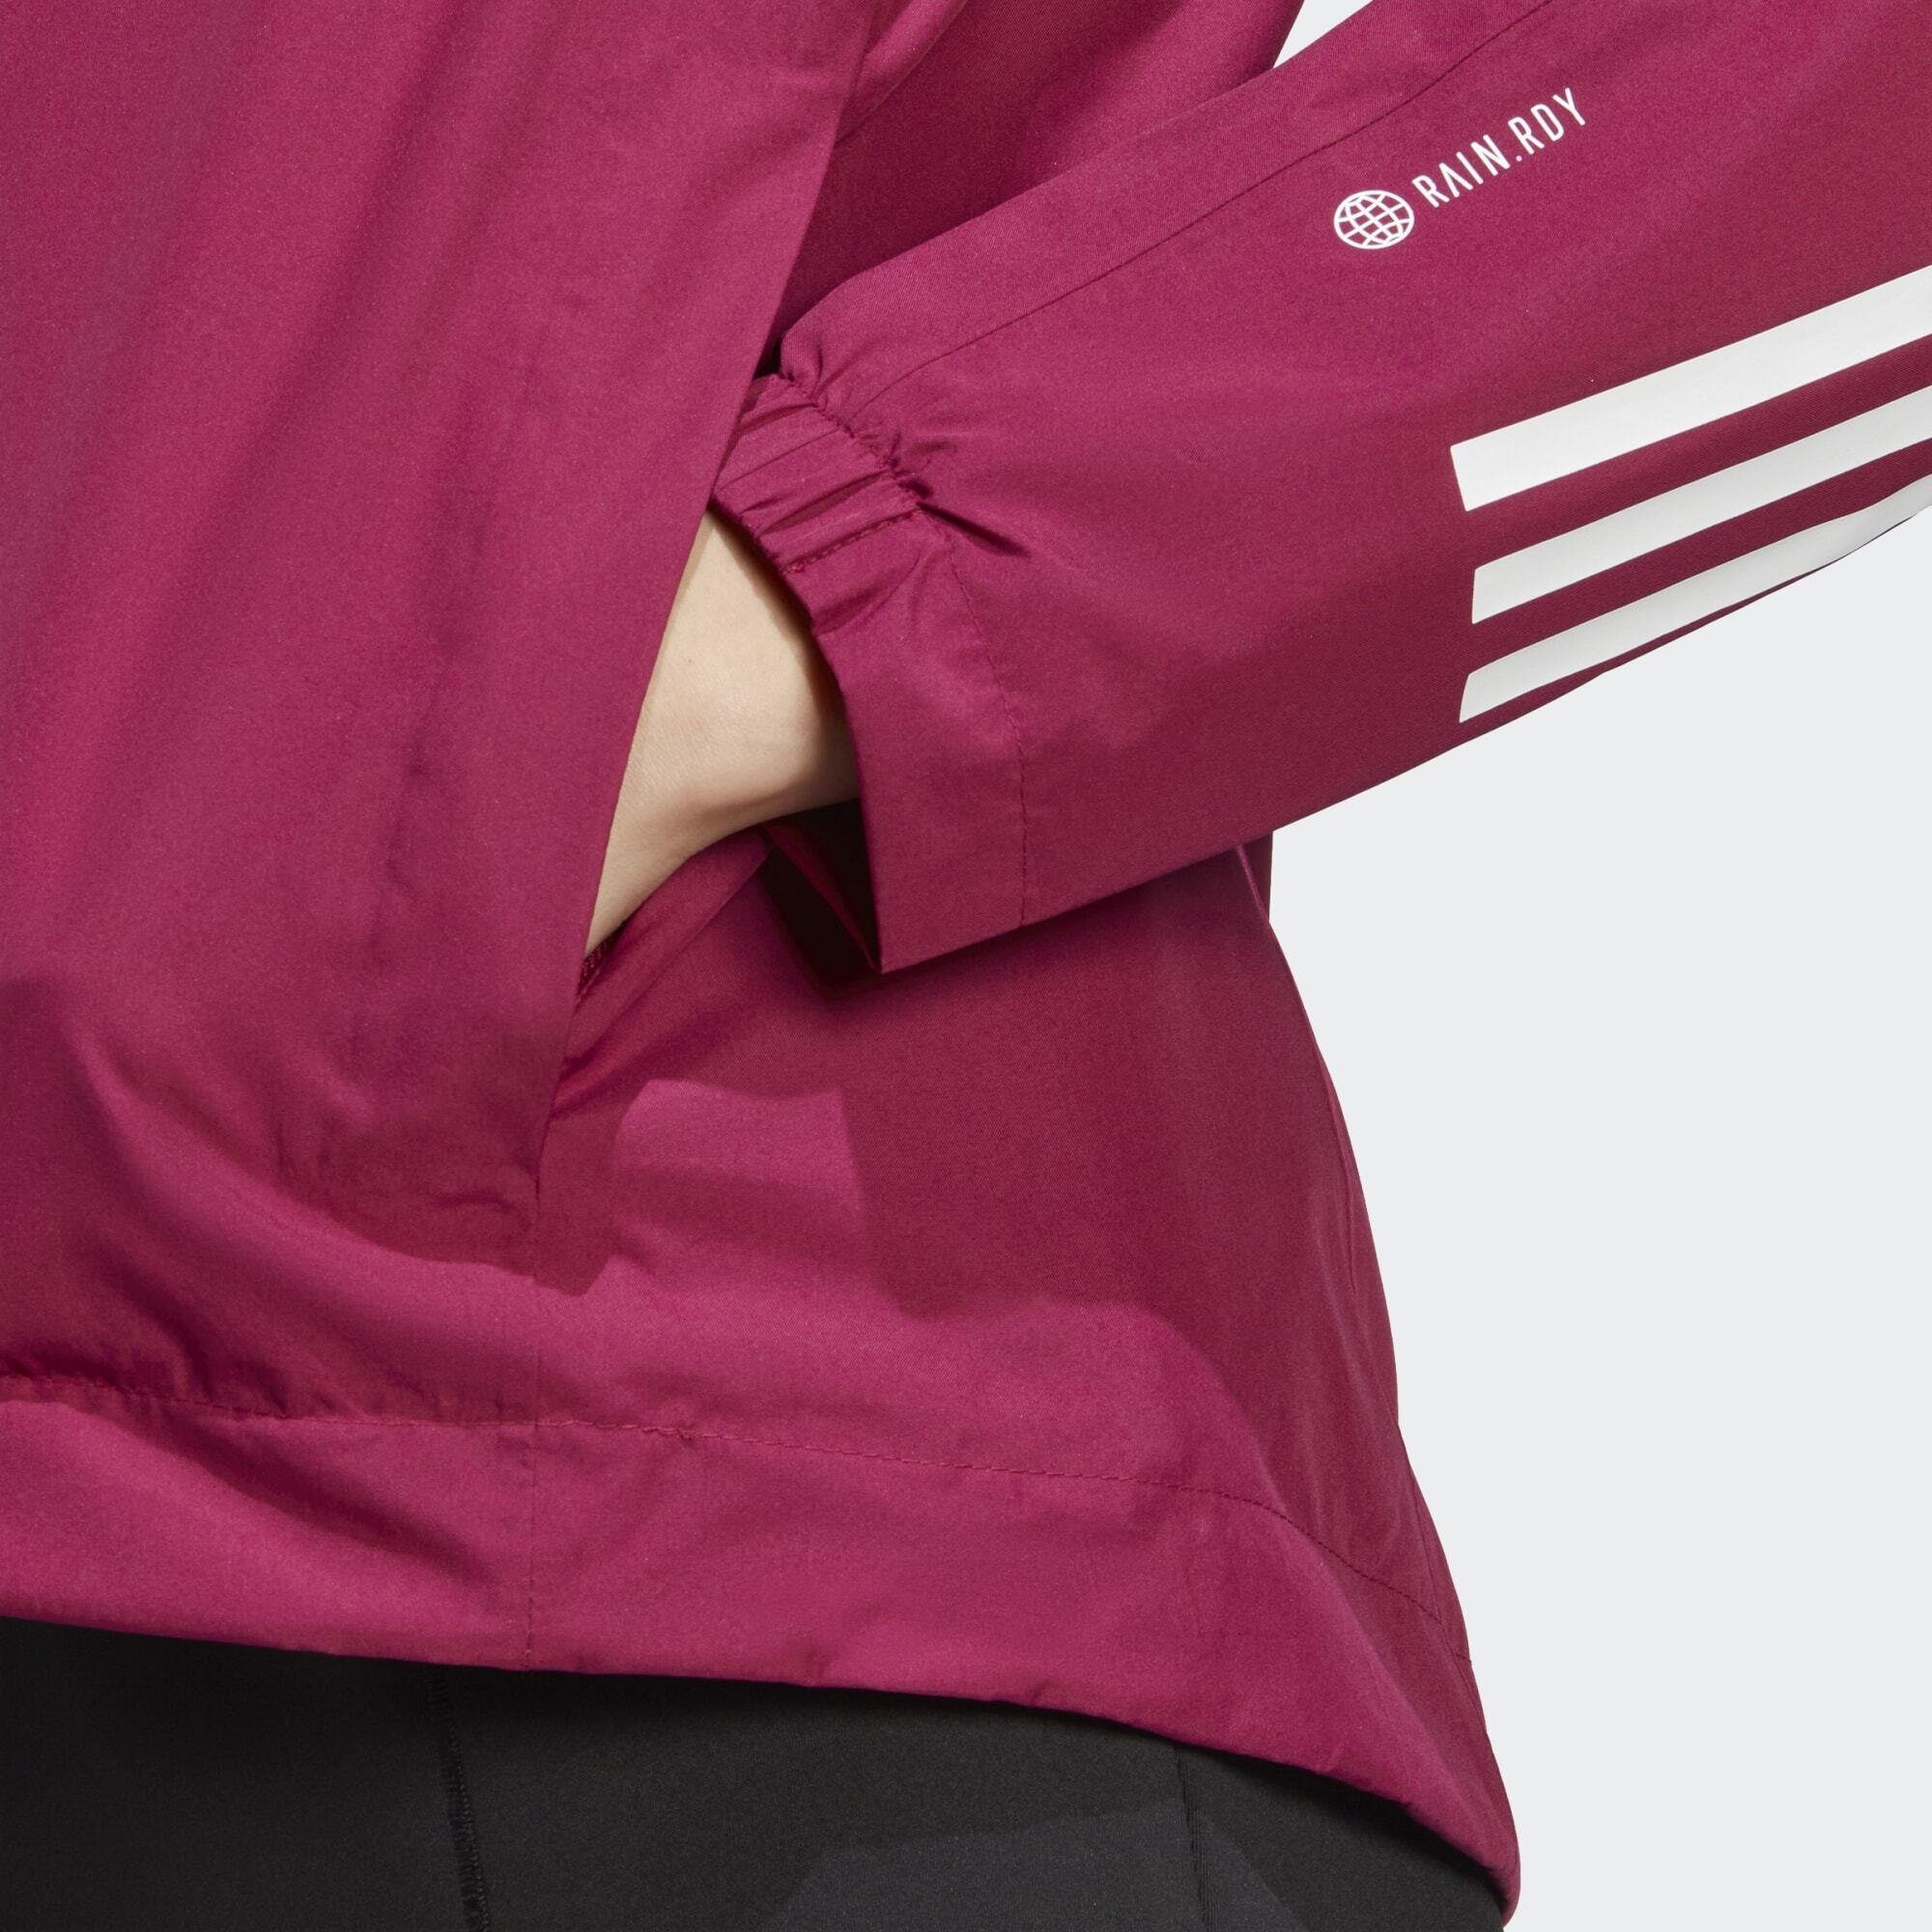 Sportswear Power Funktionsjacke REGENJACKE 3-STREIFEN RAIN.RDY Berry BSC adidas